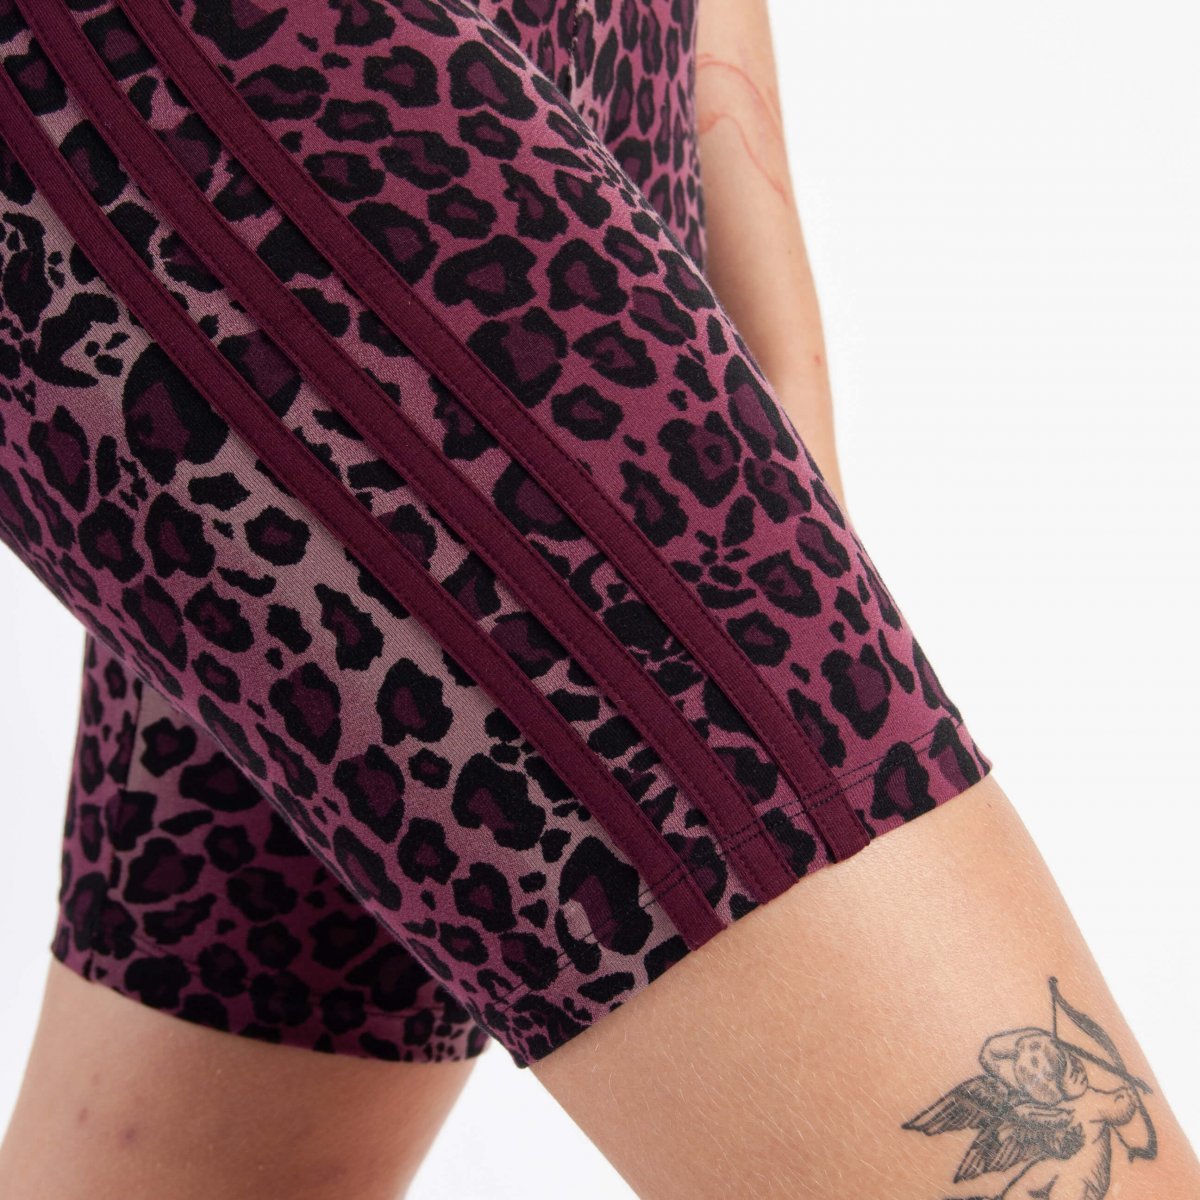 adidas Originals 'Leopard Luxe' legging shorts